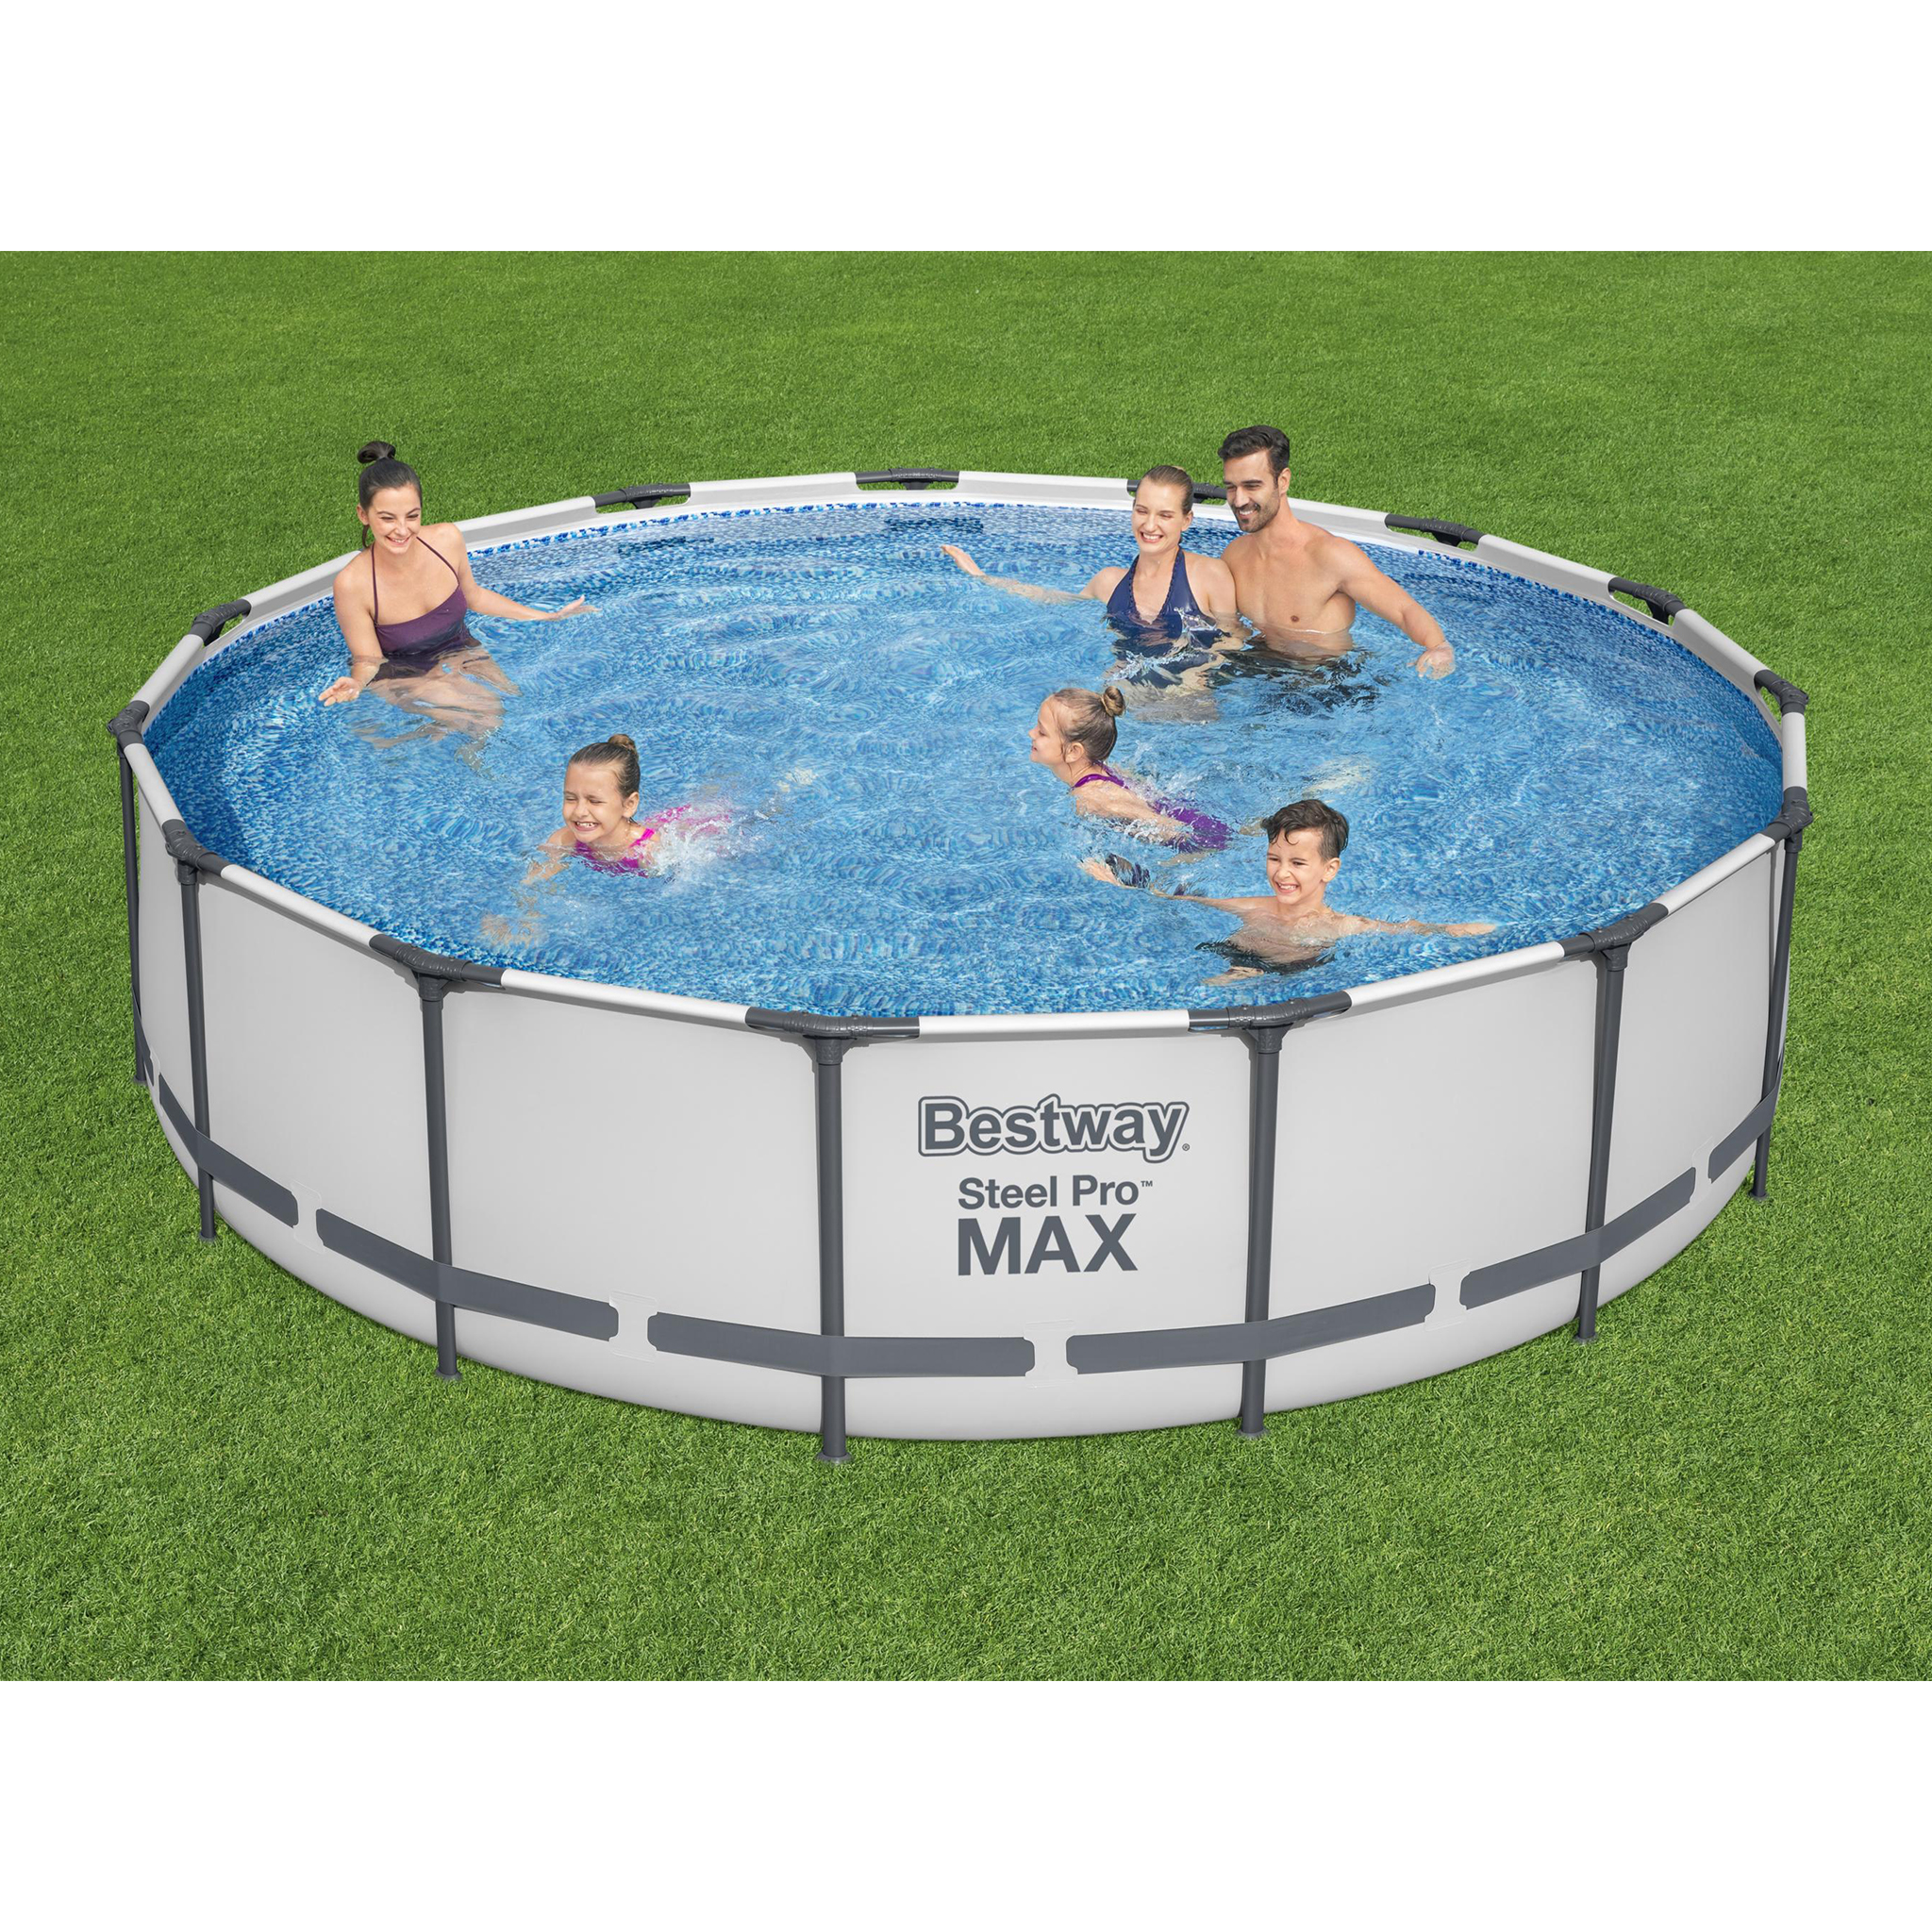 Bestway pool ovan mark Ø4,57m - 1,07m djup | Steel Pro MAX (56488)